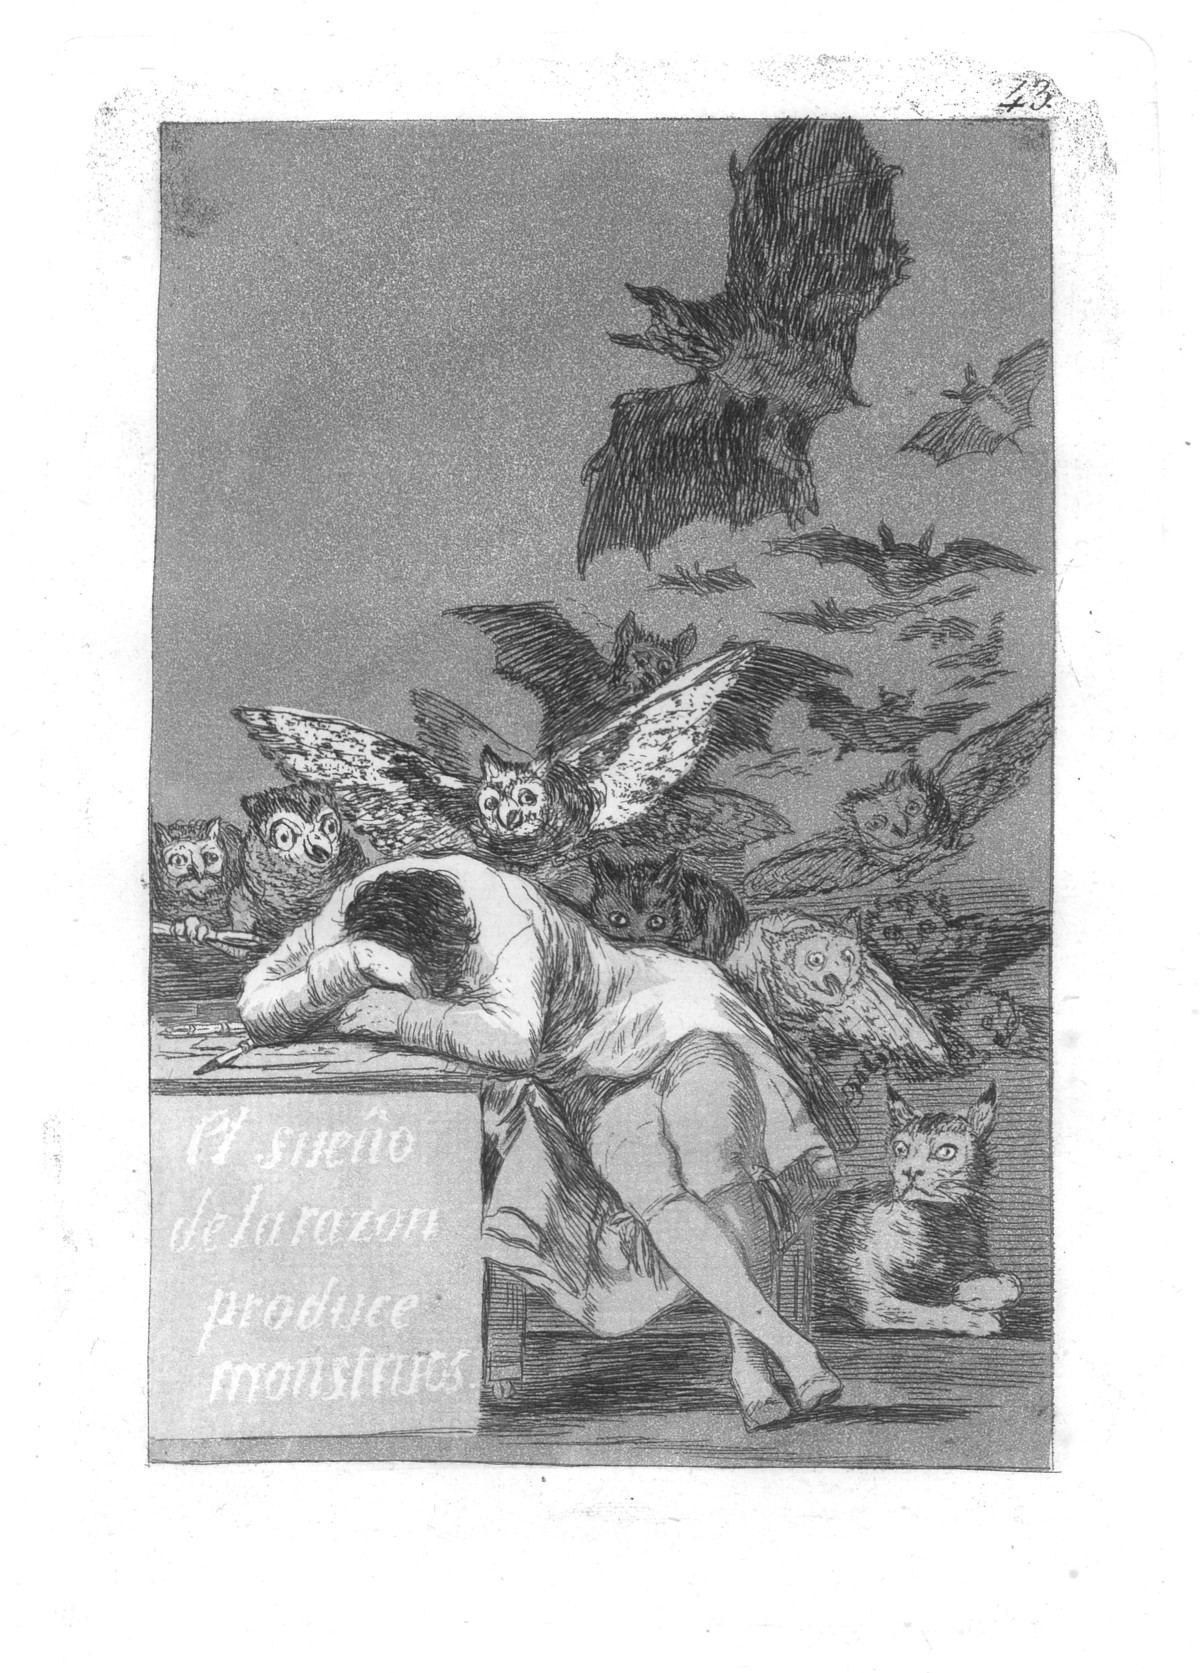 Francisco de Goya: El sueño de la razon produce monstruos, 1799, Capricho 43, Radierung mit Aquatinta